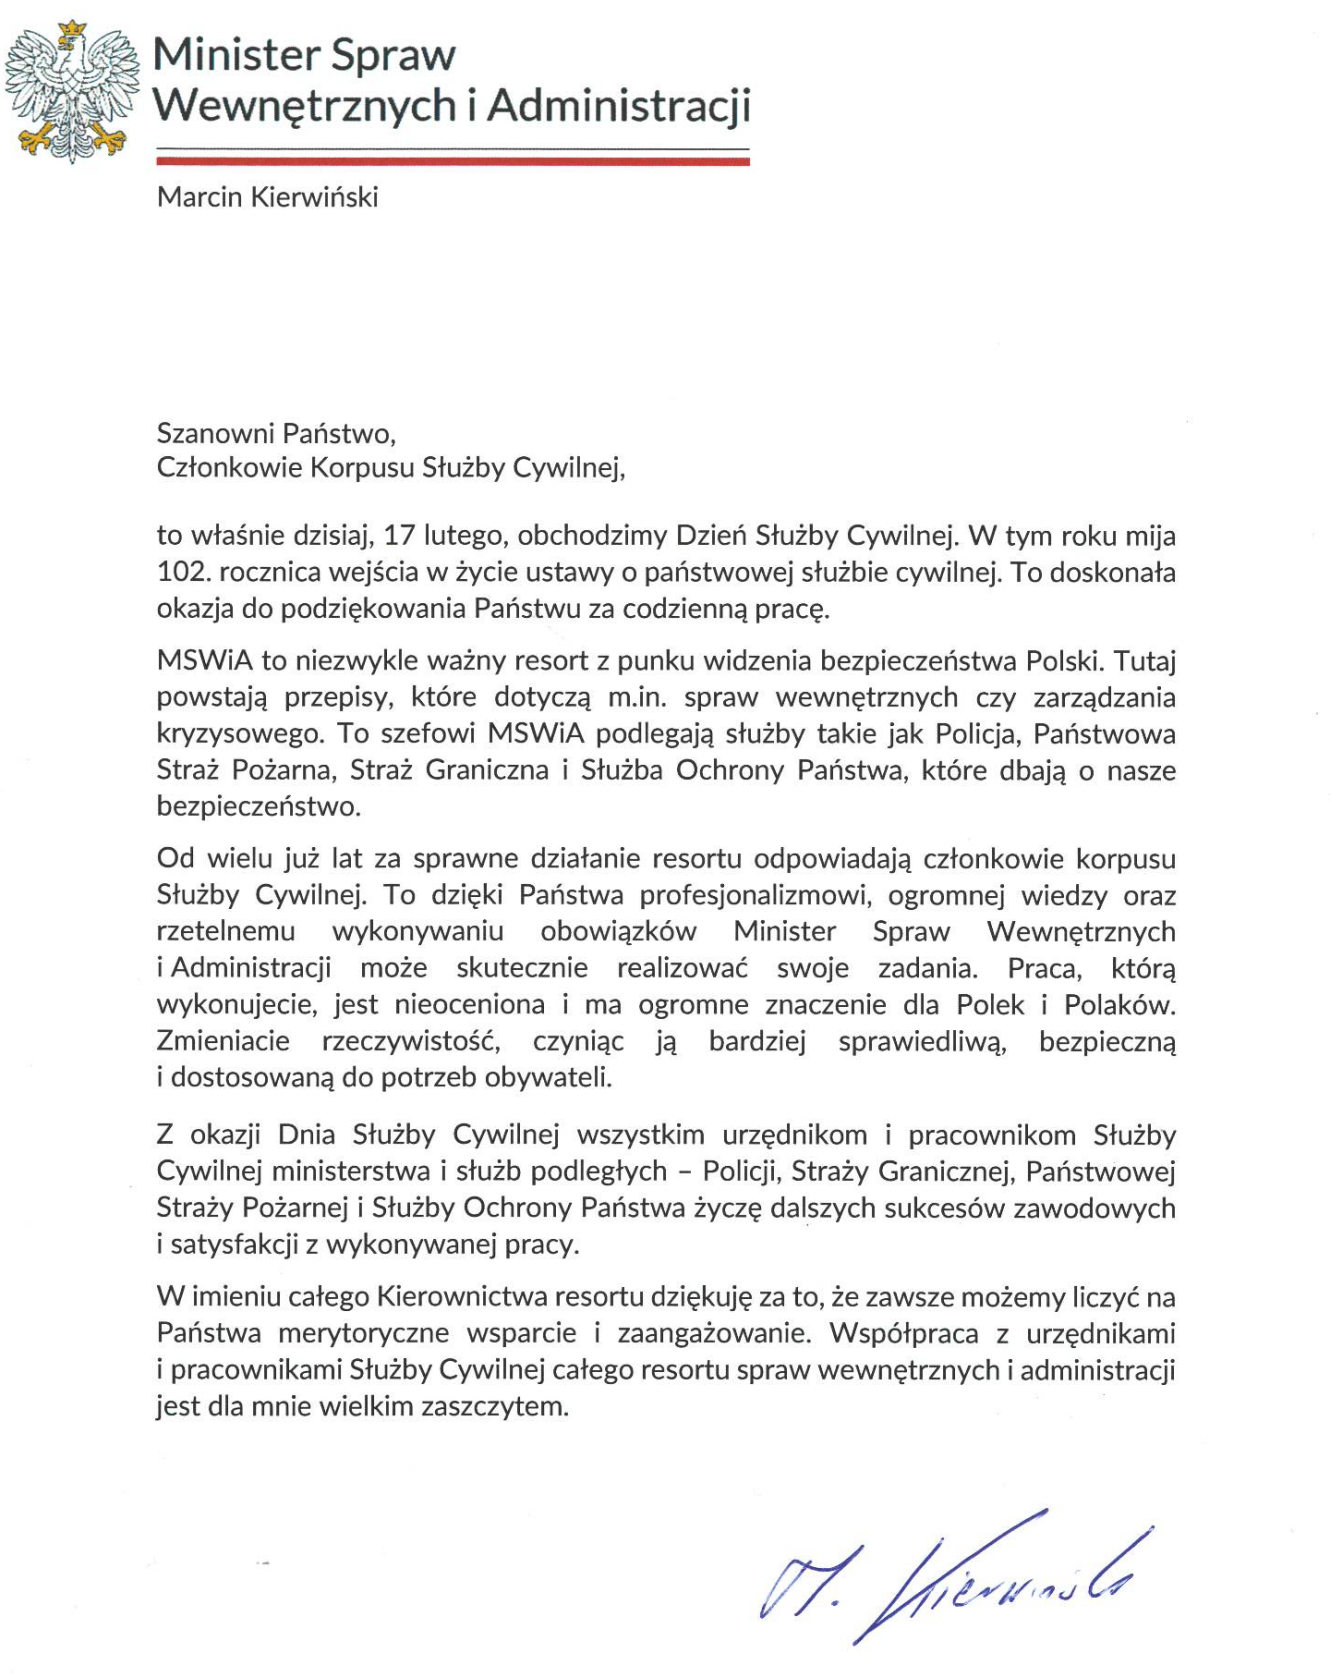 List Ministra Spraw Wewnętrznych i Administracji z okazji Dnia Służby Cywilnej